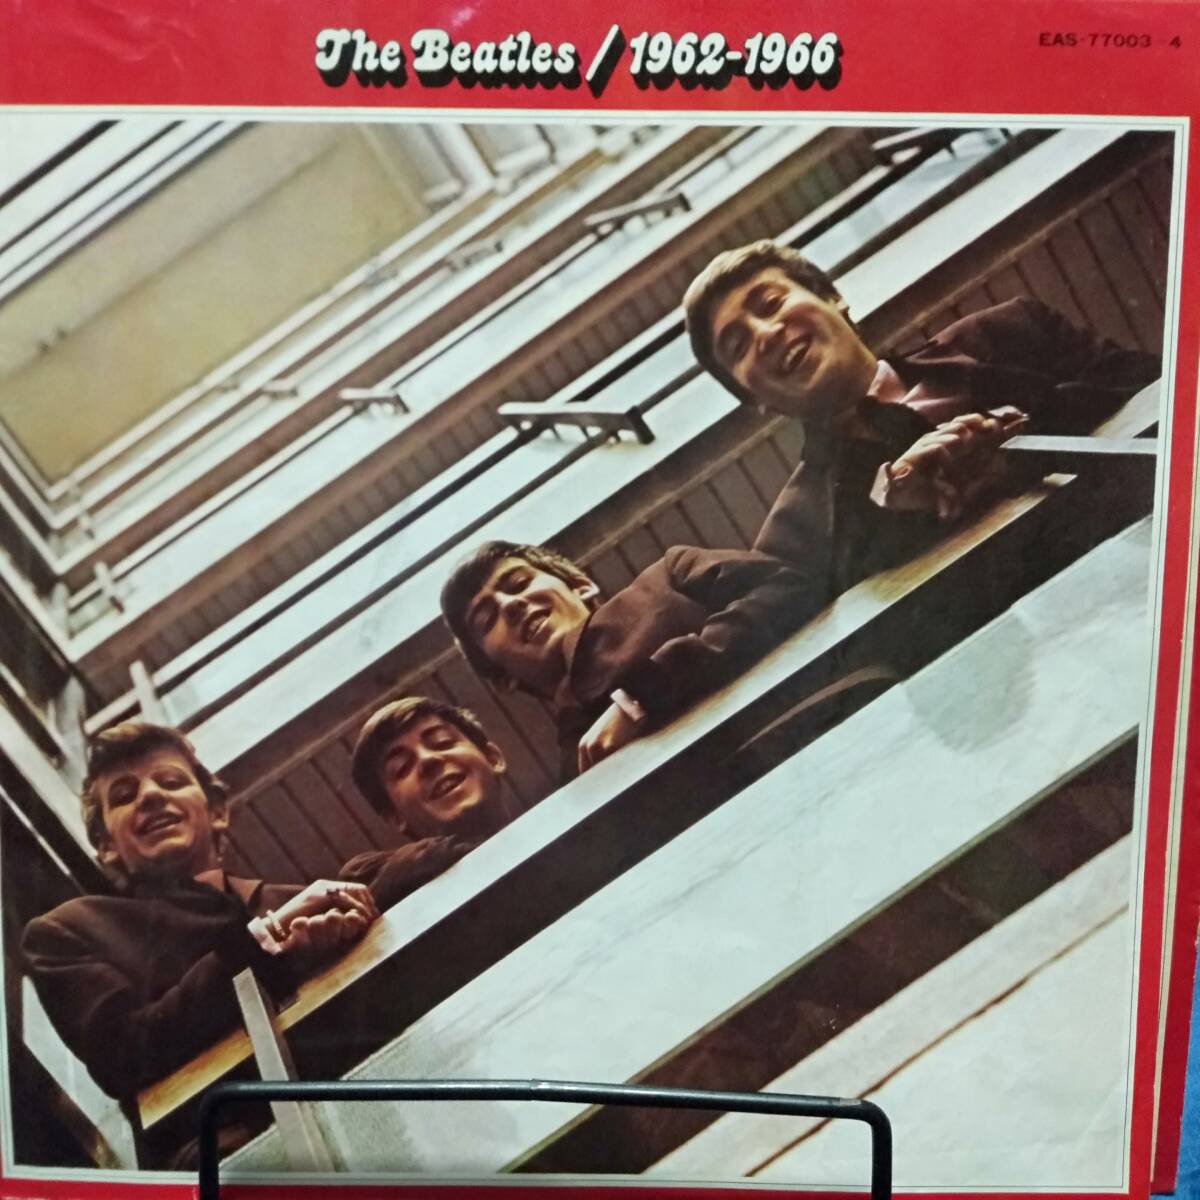 レコード THE BEATLS 1962-1966 ビートルズ 洋楽 EAS-77003-4_画像5